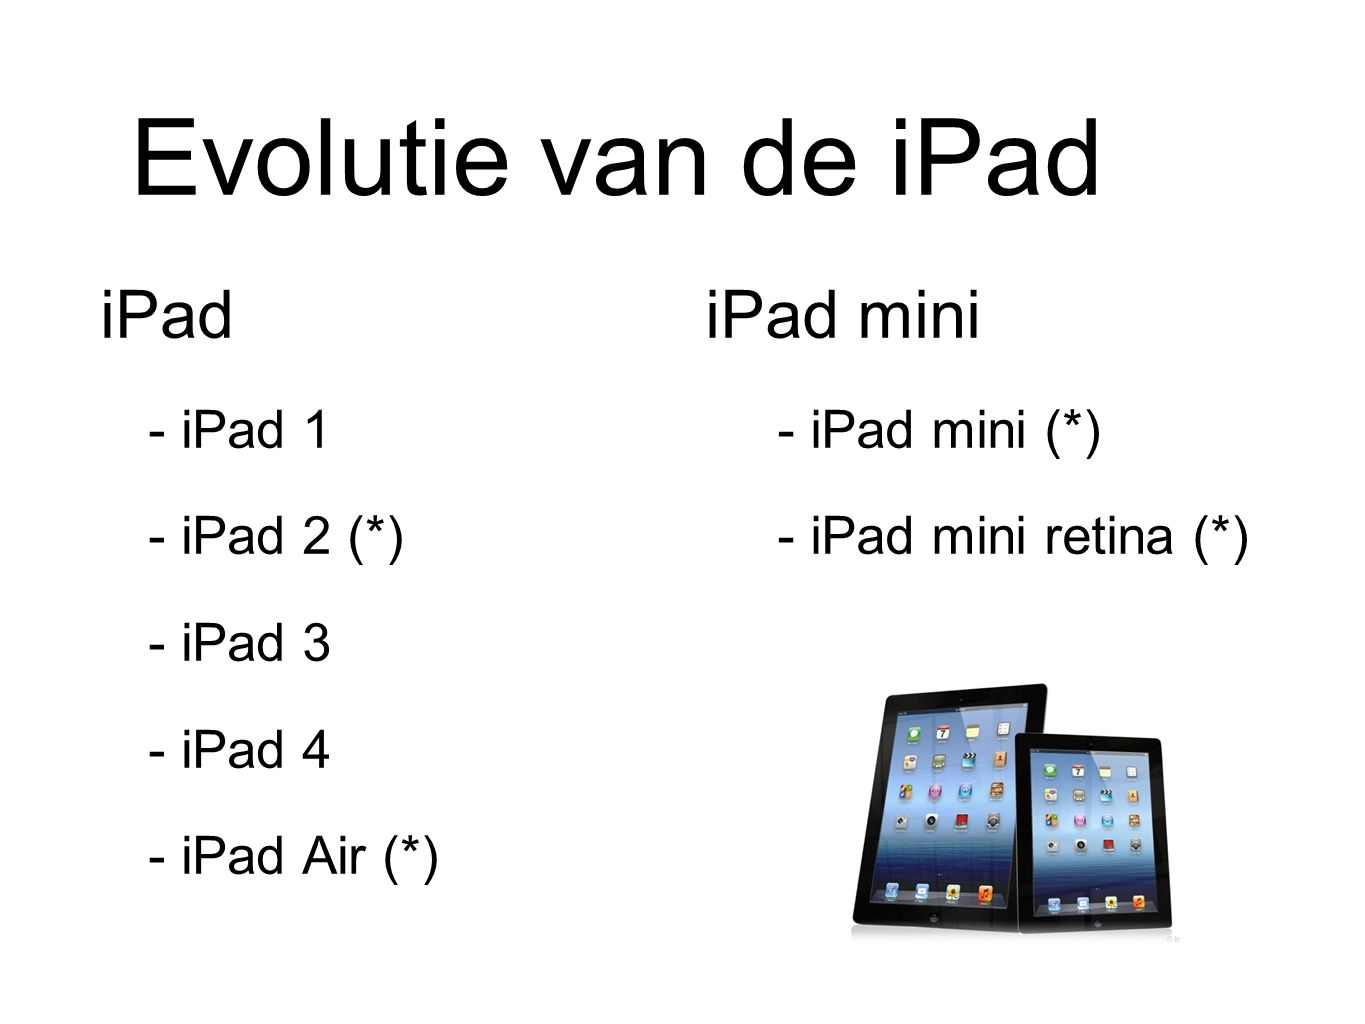 Evolutie van de iPad iPad - iPad 1 - iPad 2 (*) - iPad 3 - iPad 4 - iPad Air (*) iPad mini - iPad mini (*) - iPad mini retina (*)